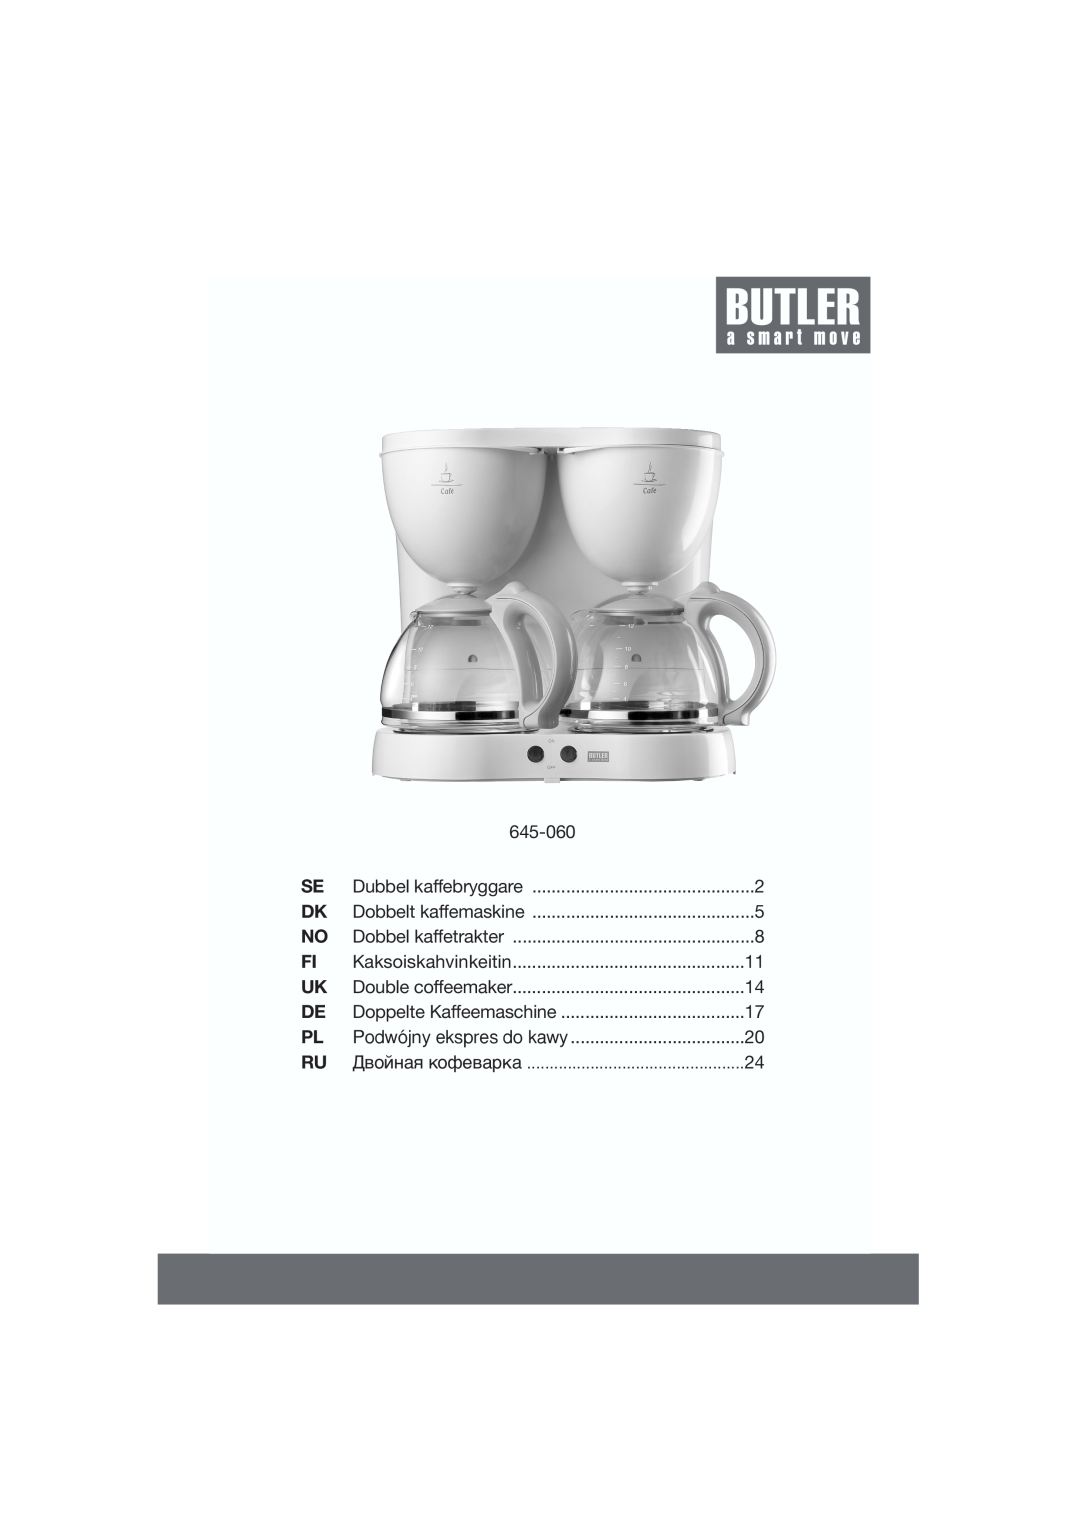 Butler 645-060 manual Dubbel kaffebryggare, Dobbelt kaffemaskine, Dobbel kaffetrakter, Kaksoiskahvinkeitin 